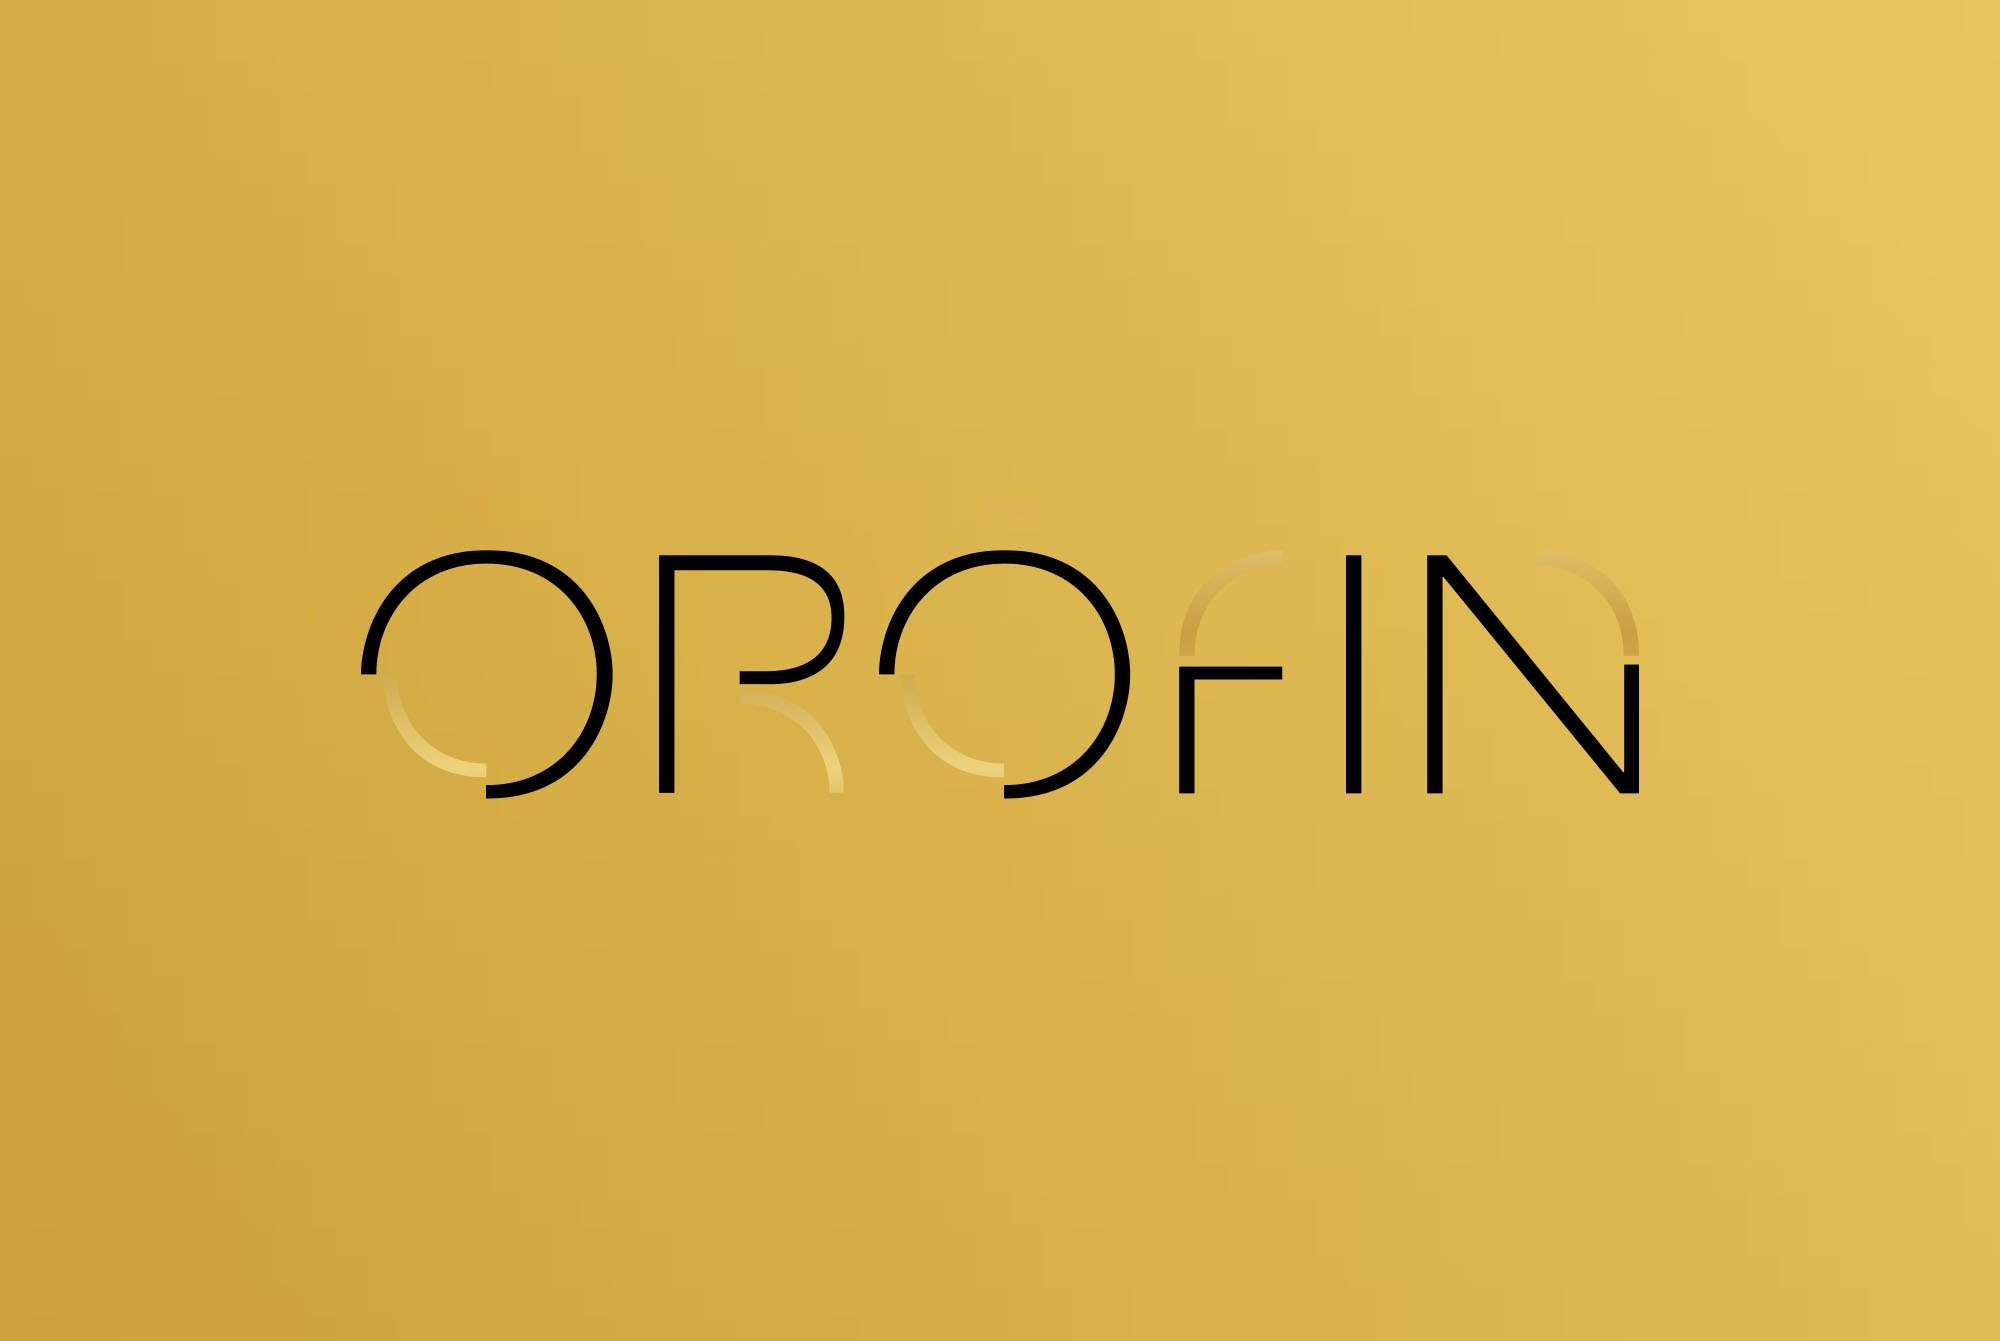 Orofin Online Magazin KURZ Logo gelb schwarz